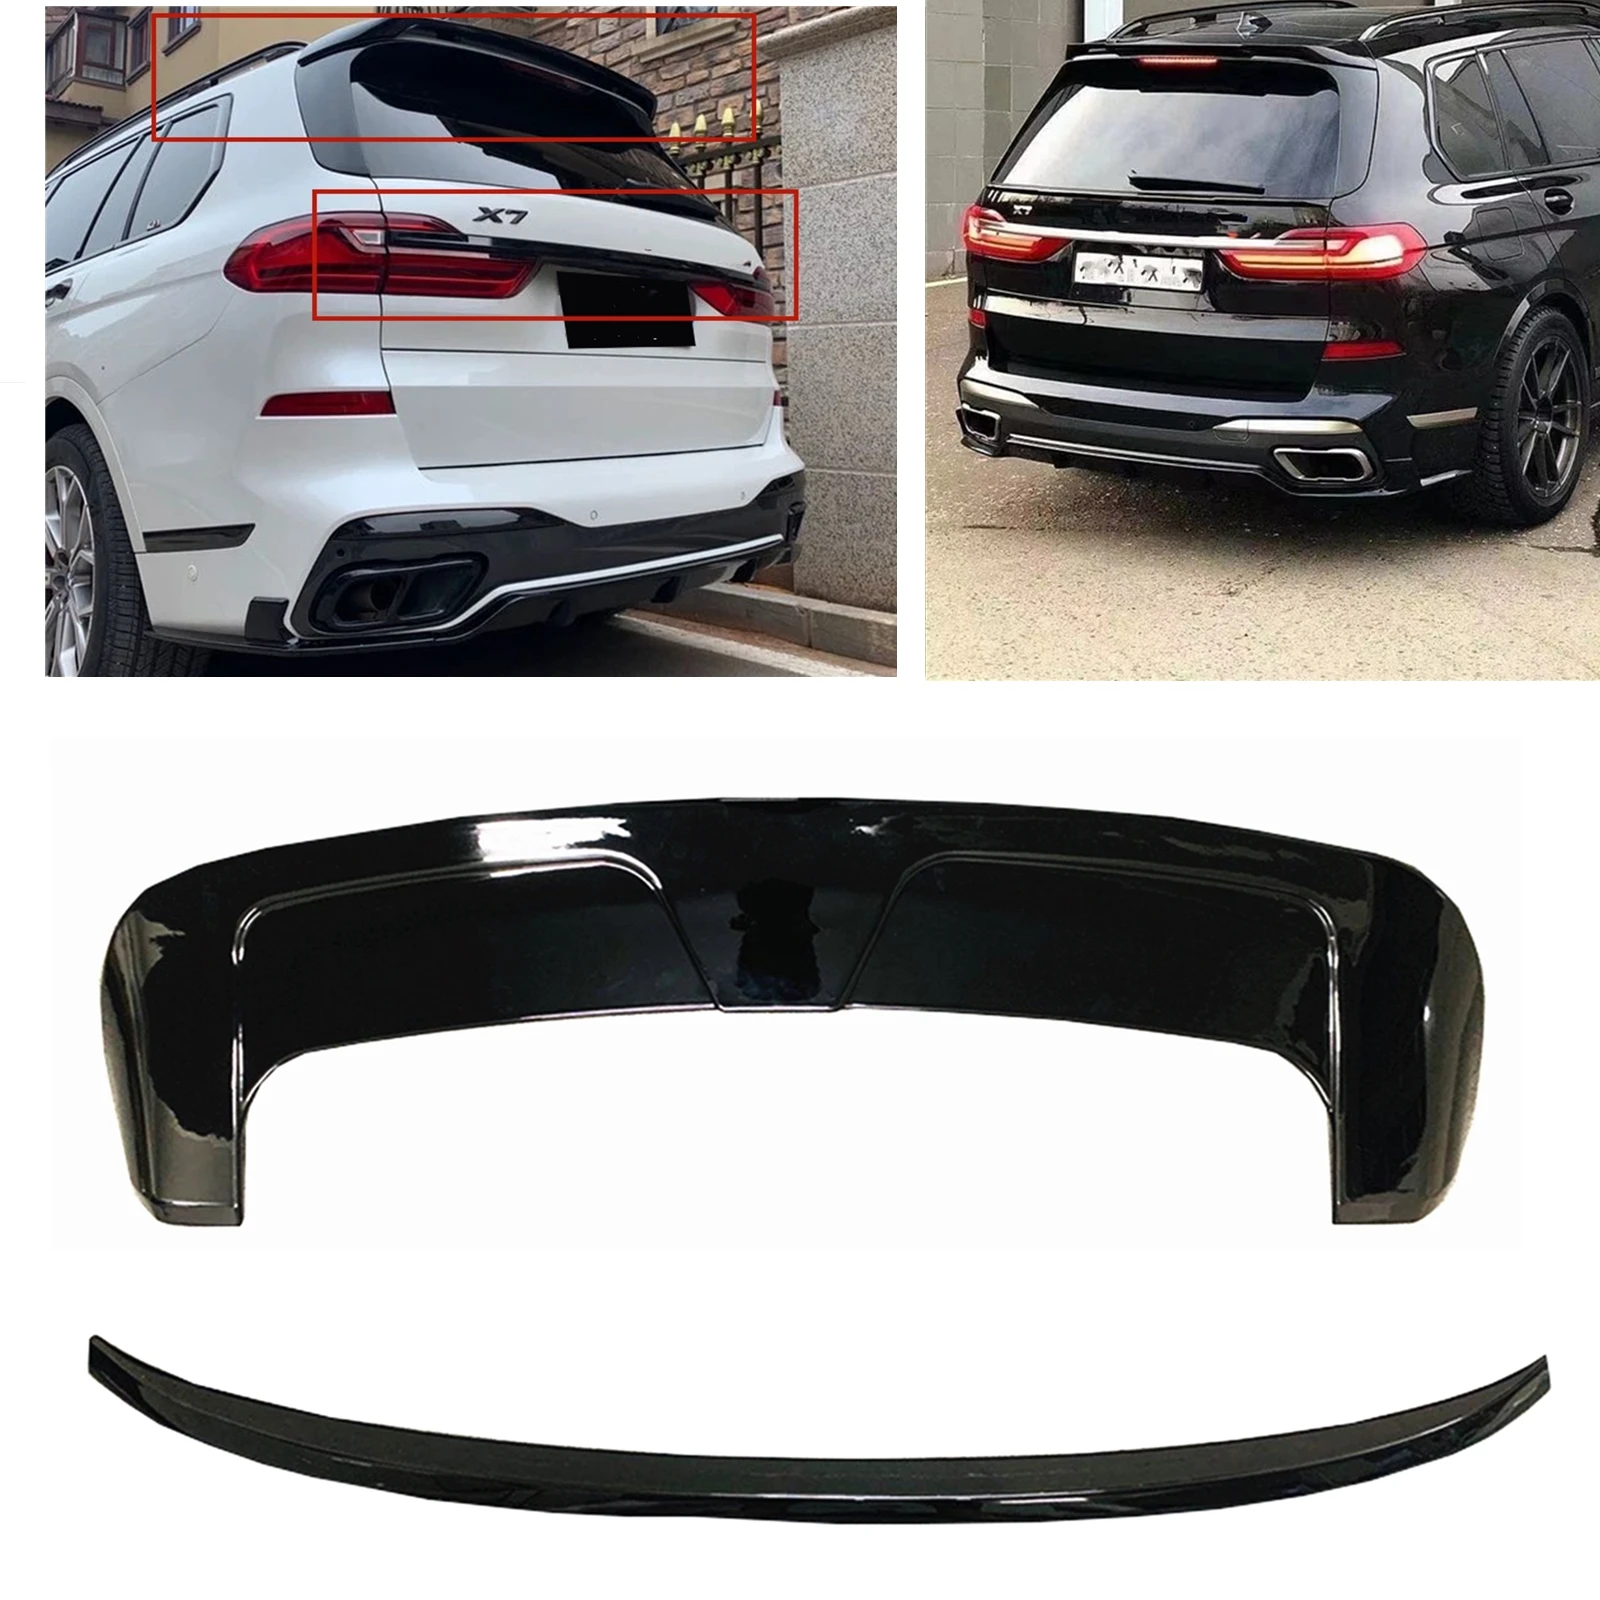 

Глянцевый черный сплиттер для корпуса BMW X7 G07 2019-2021, задняя крышка автомобиля, задняя крышка, Задняя Крышка багажника, средний спойлер, губа